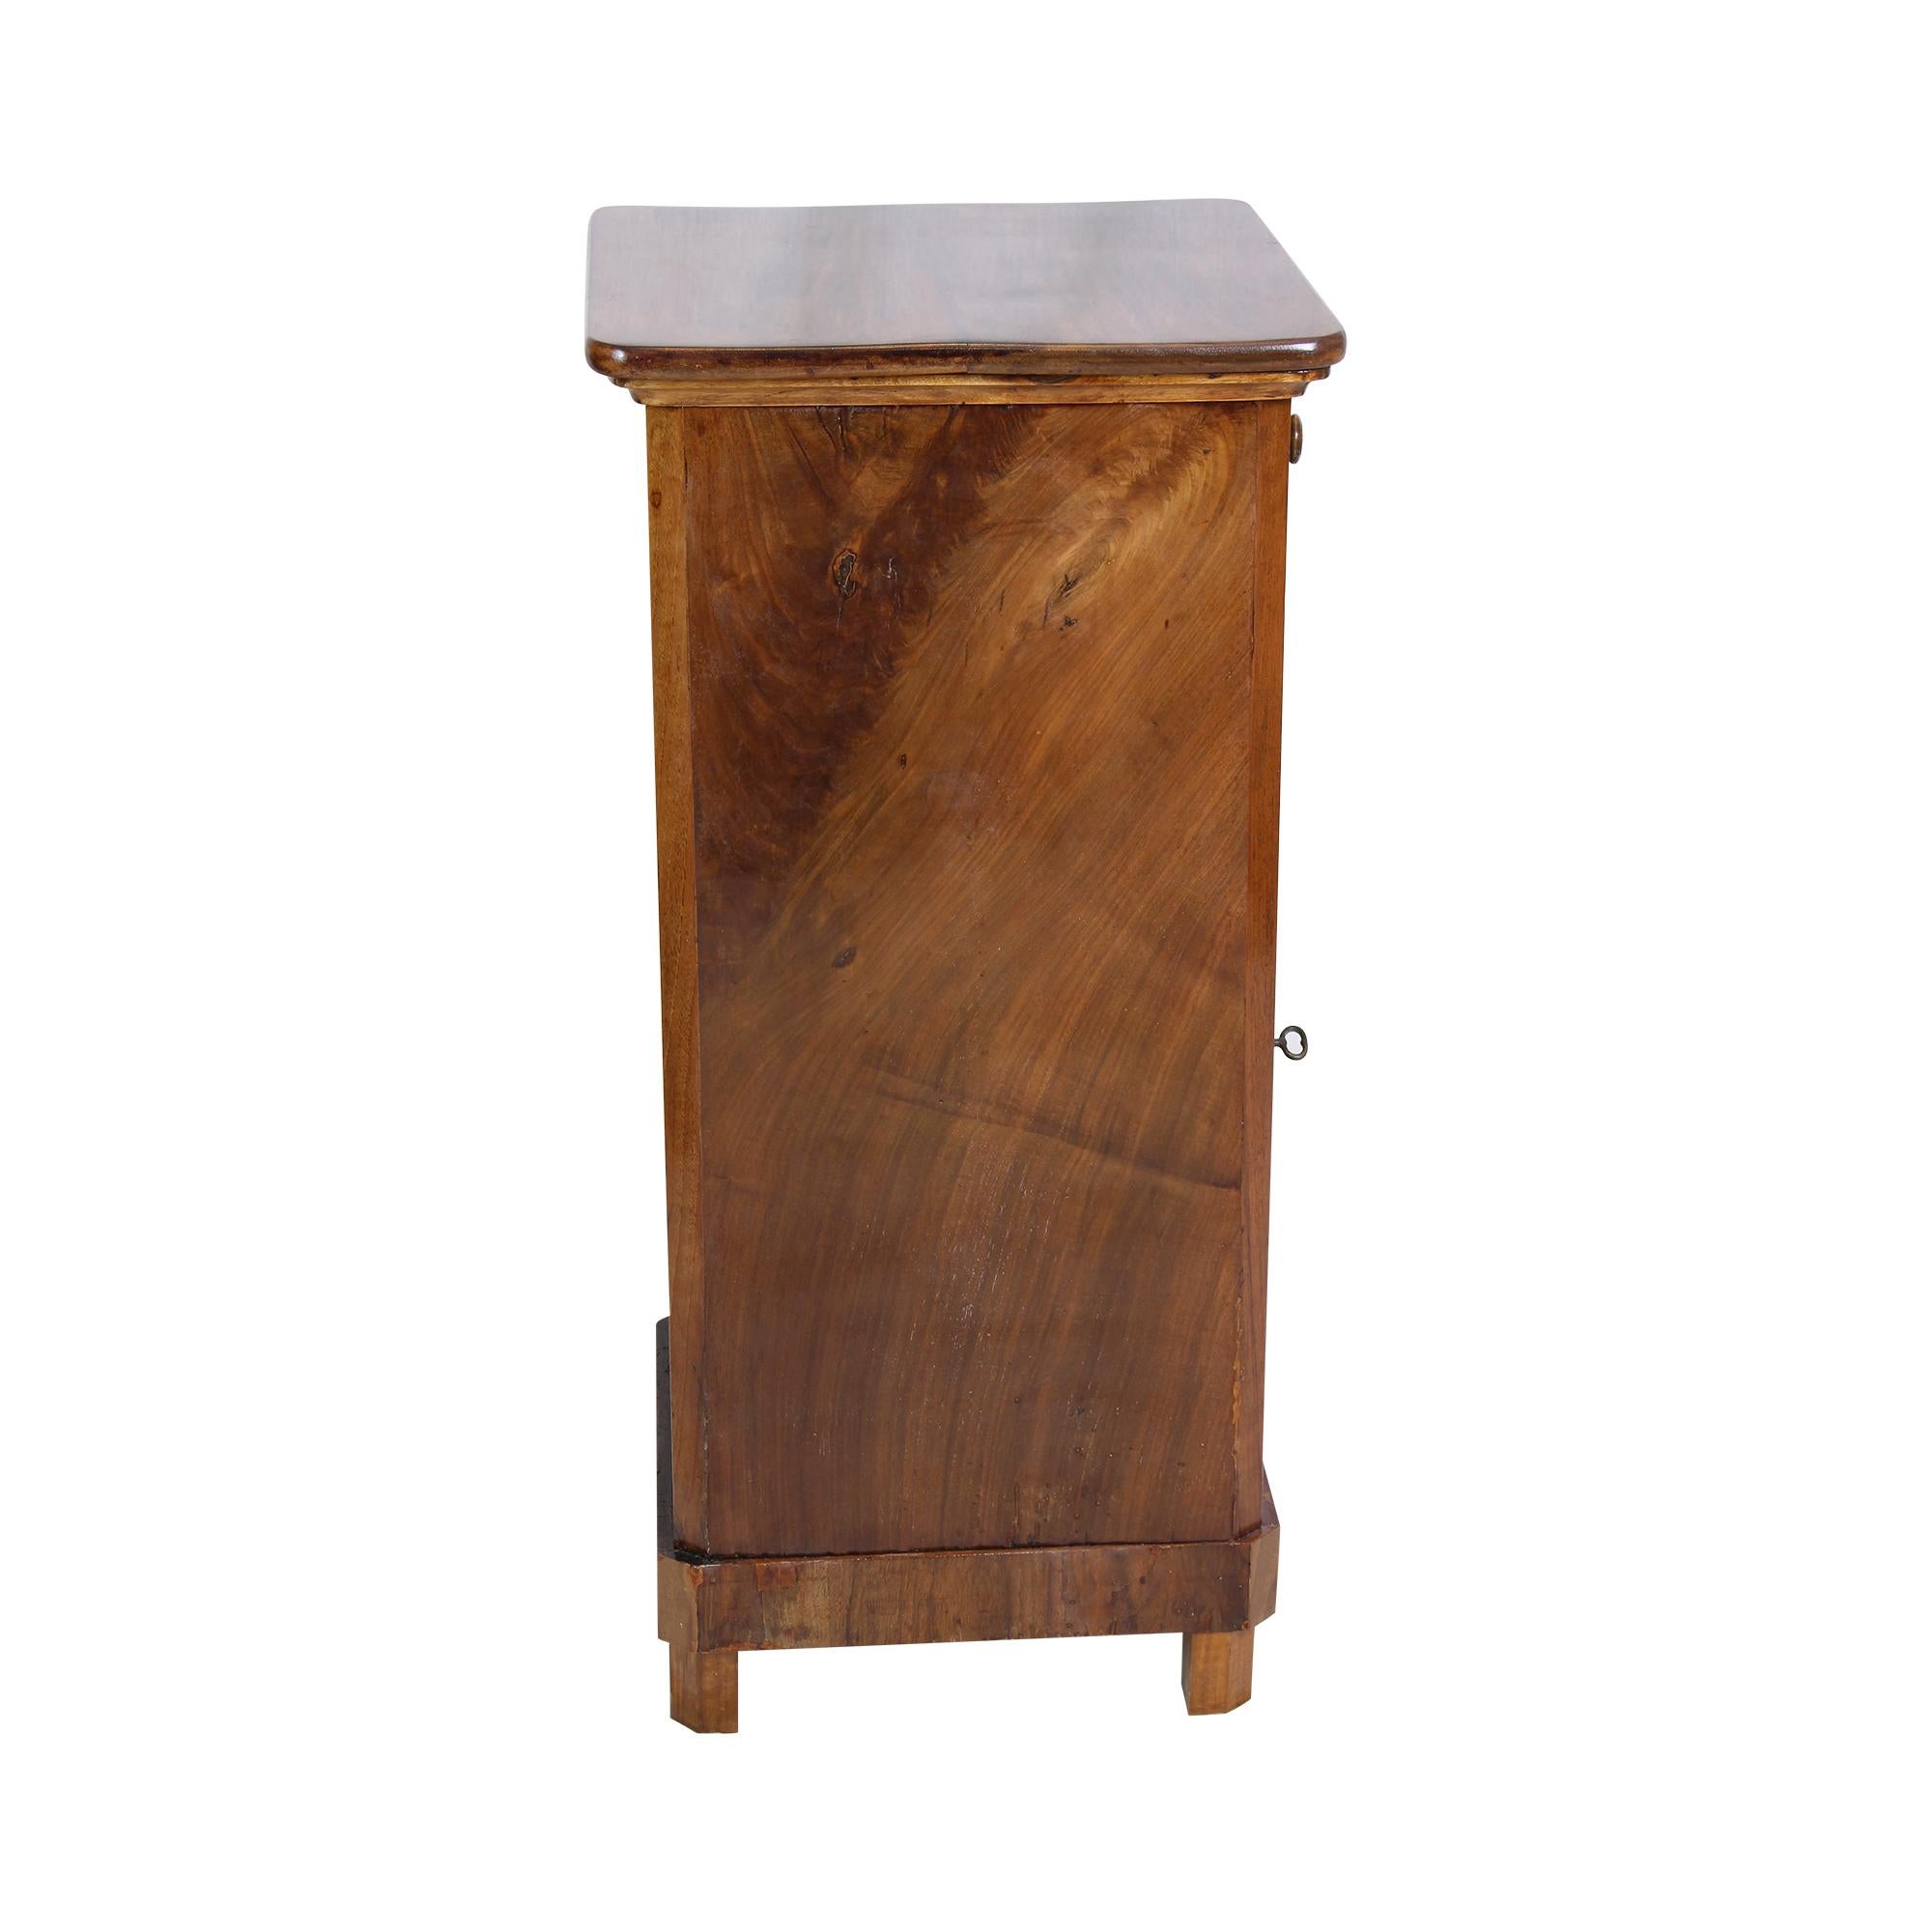 Magnifique table de chevet Biedermeier en placage de noyer sur bois tendre en provenance d'Allemagne. Il y a un tiroir en haut et une porte en bas. Le meuble peut être placé seul car le dos est également plaqué. Le mobilier est en très bon état,